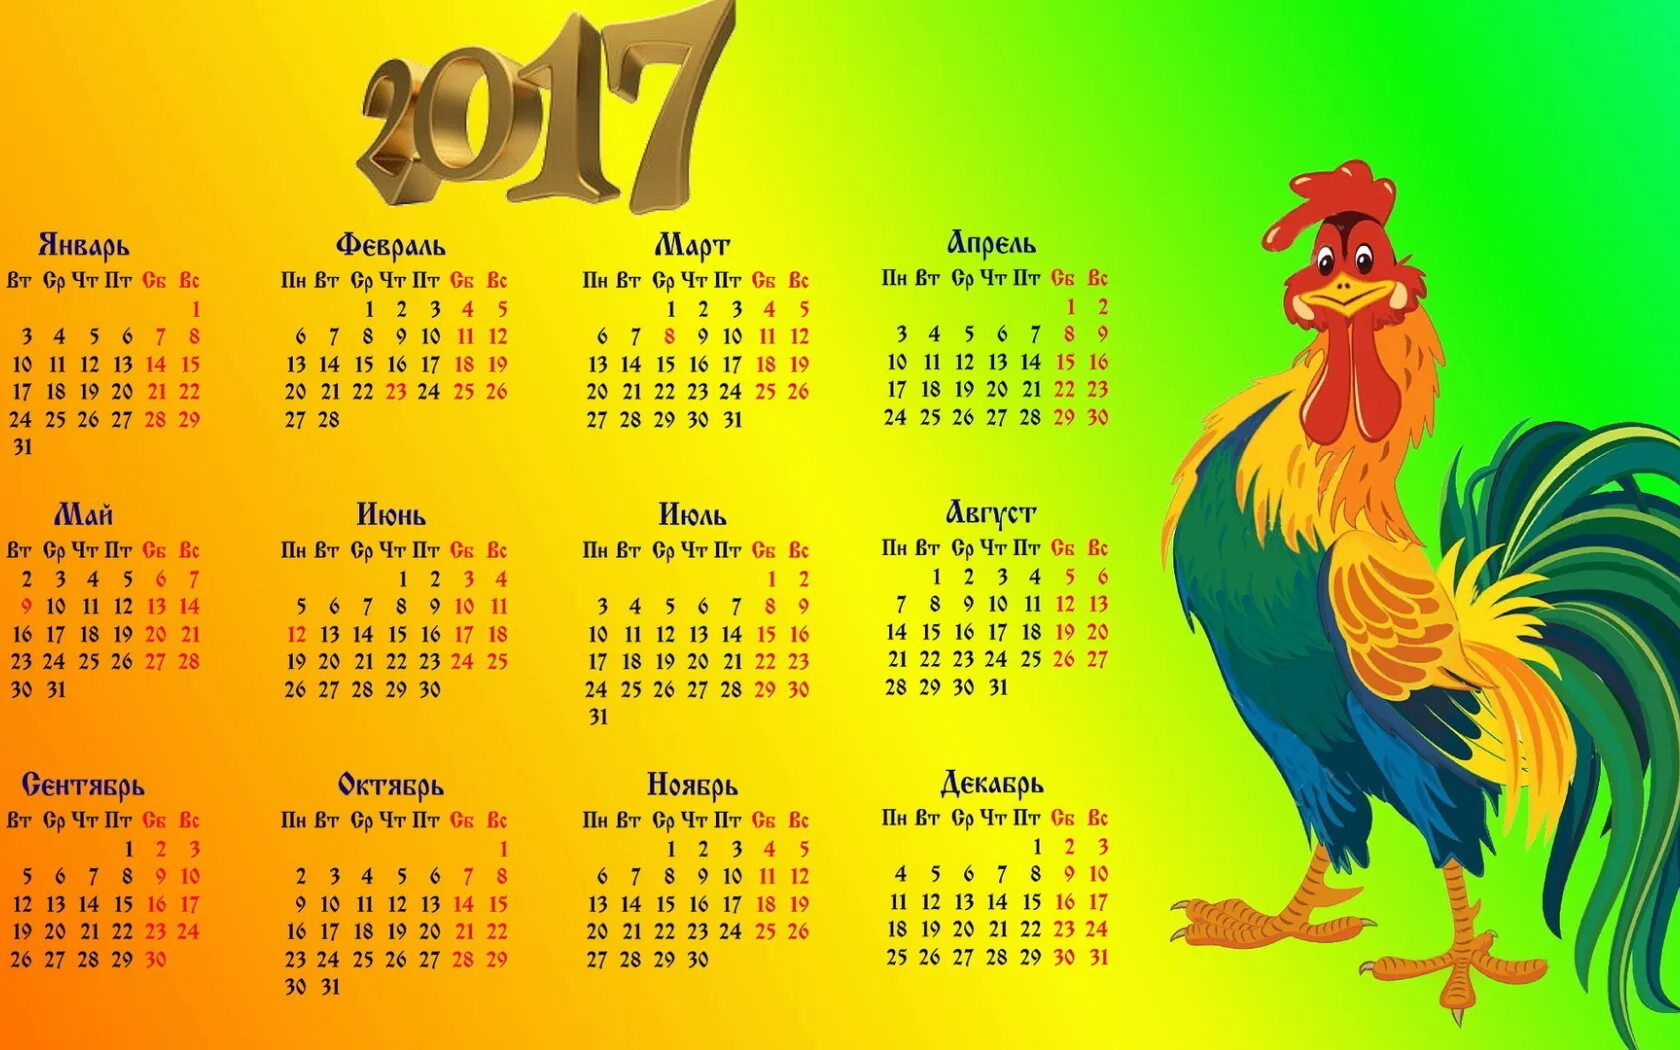 Календарь 2017 года. Календарь 2017г. Календарь 2017 год петуха. Календарь 2017 года по месяцам. 6 октября 2017 год